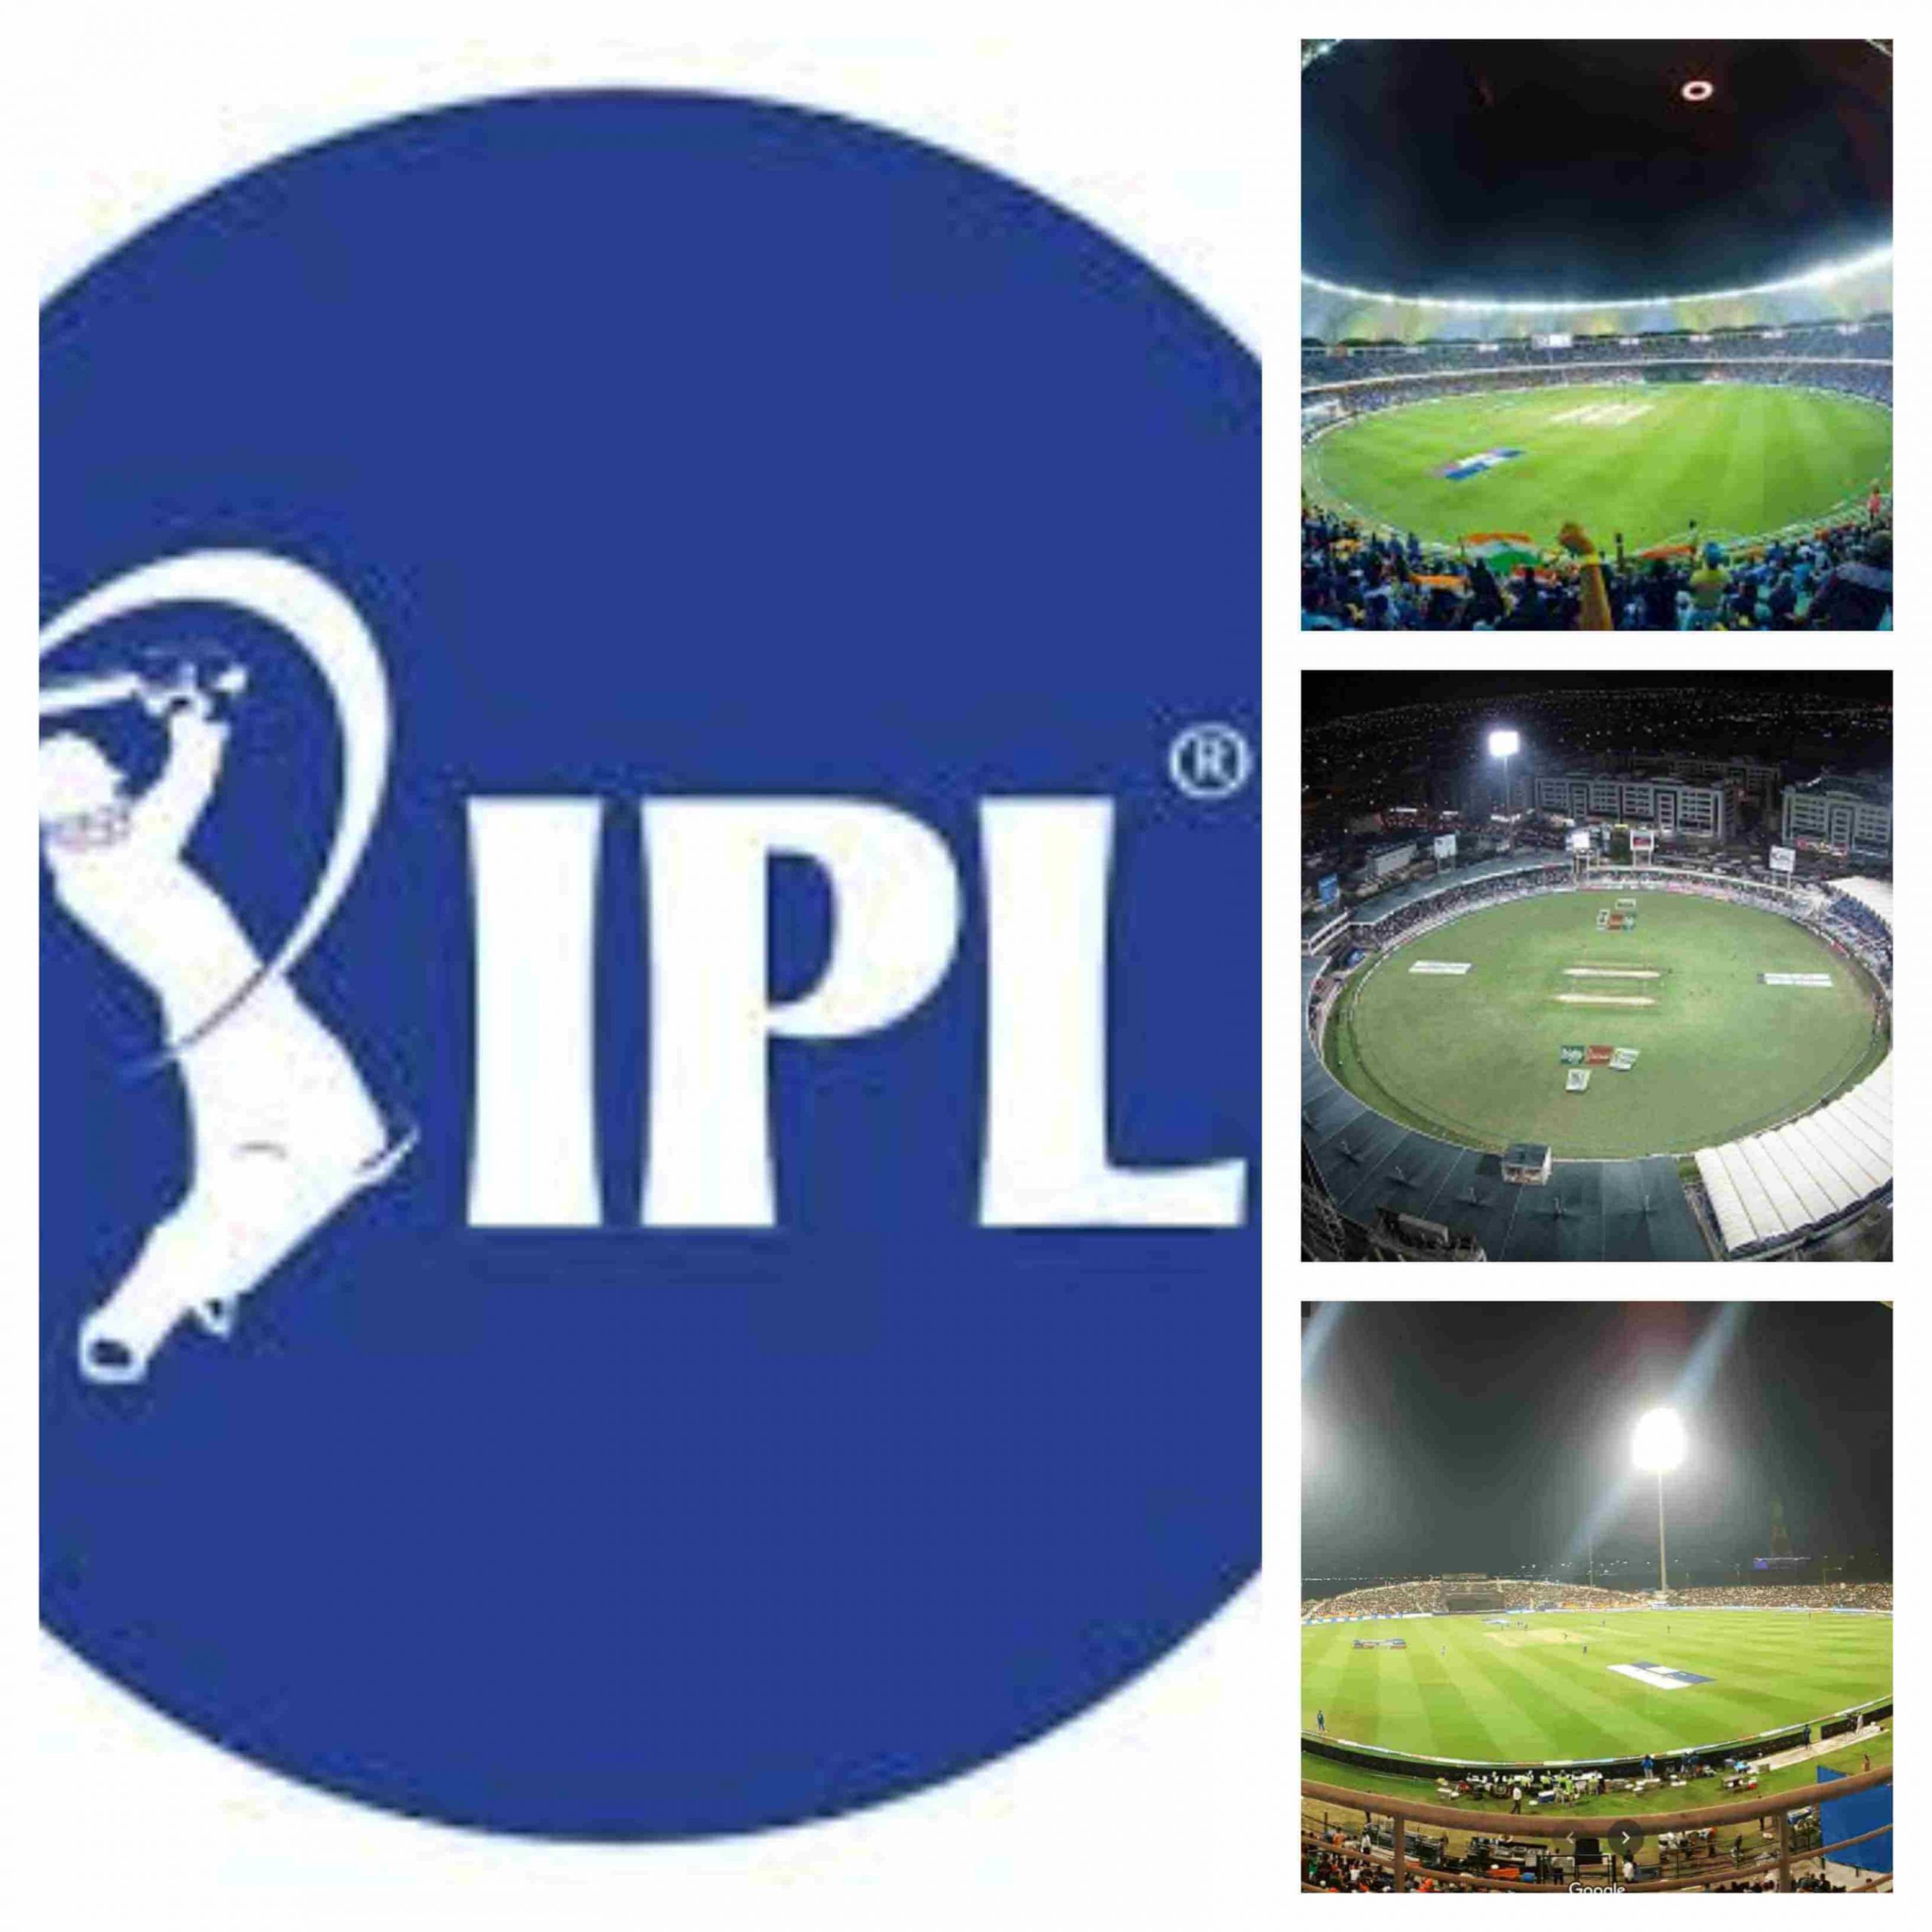 IPL 2020 venue stadium